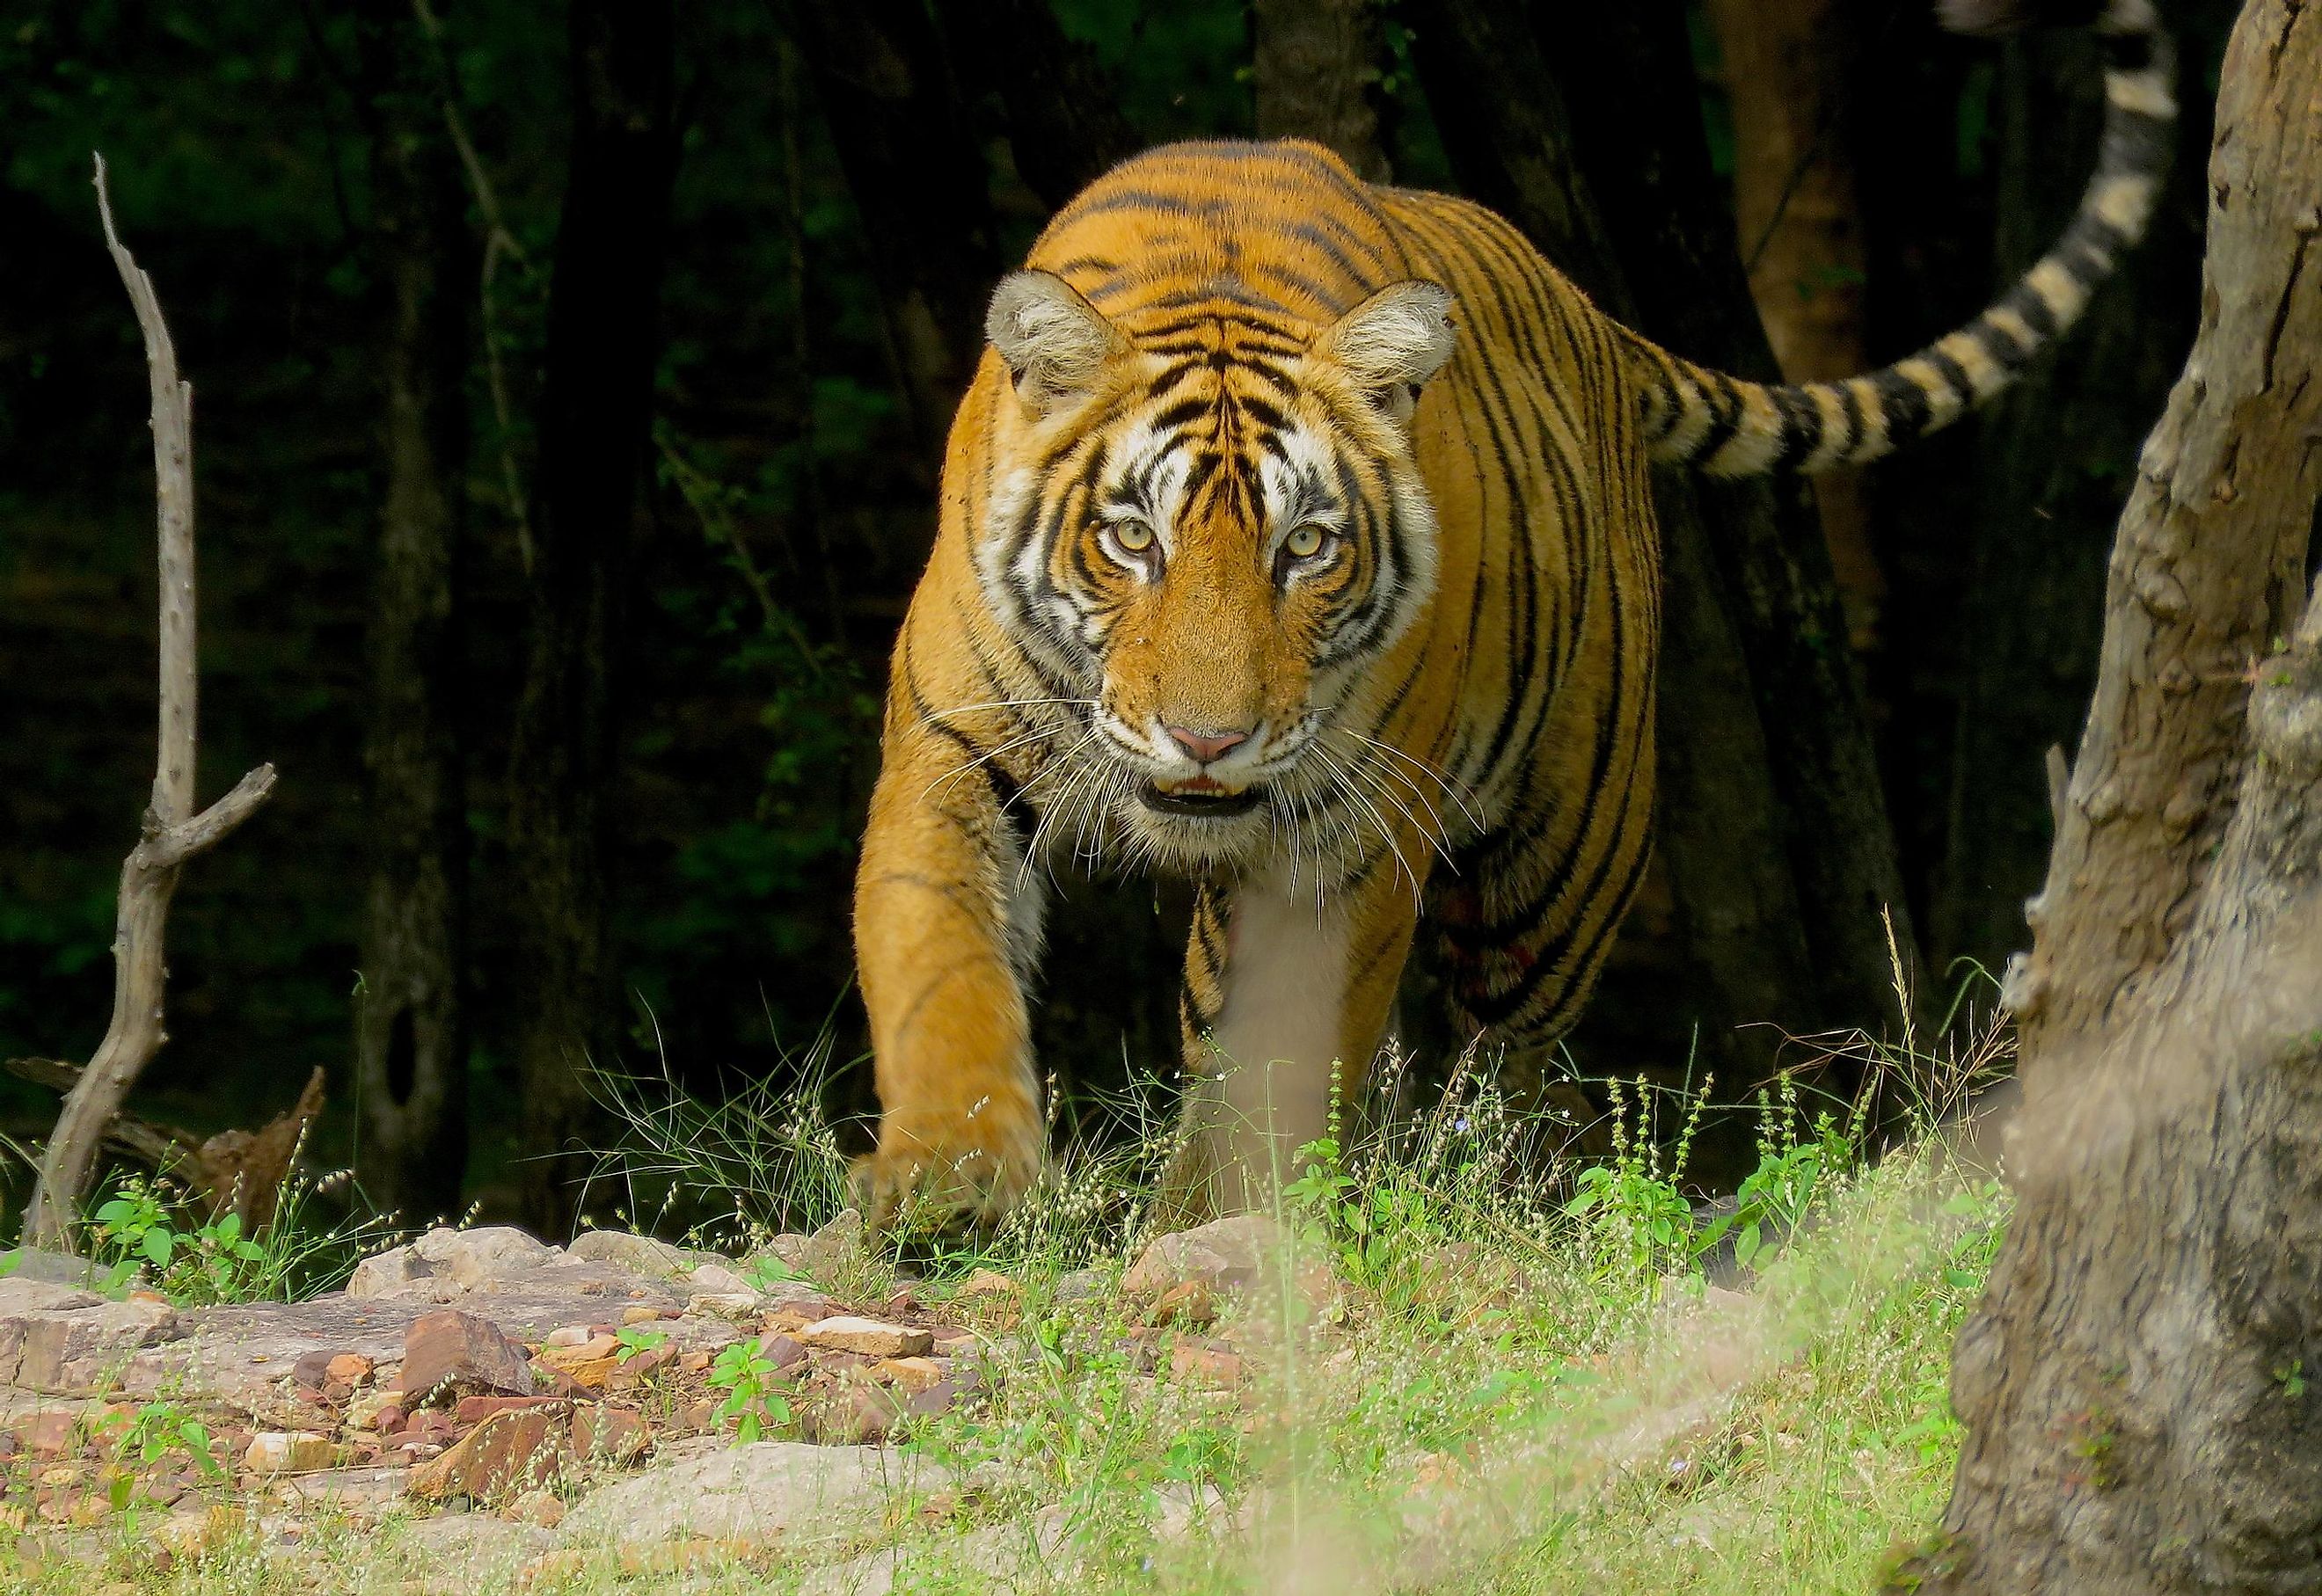 Tiger in Ranthambhore.